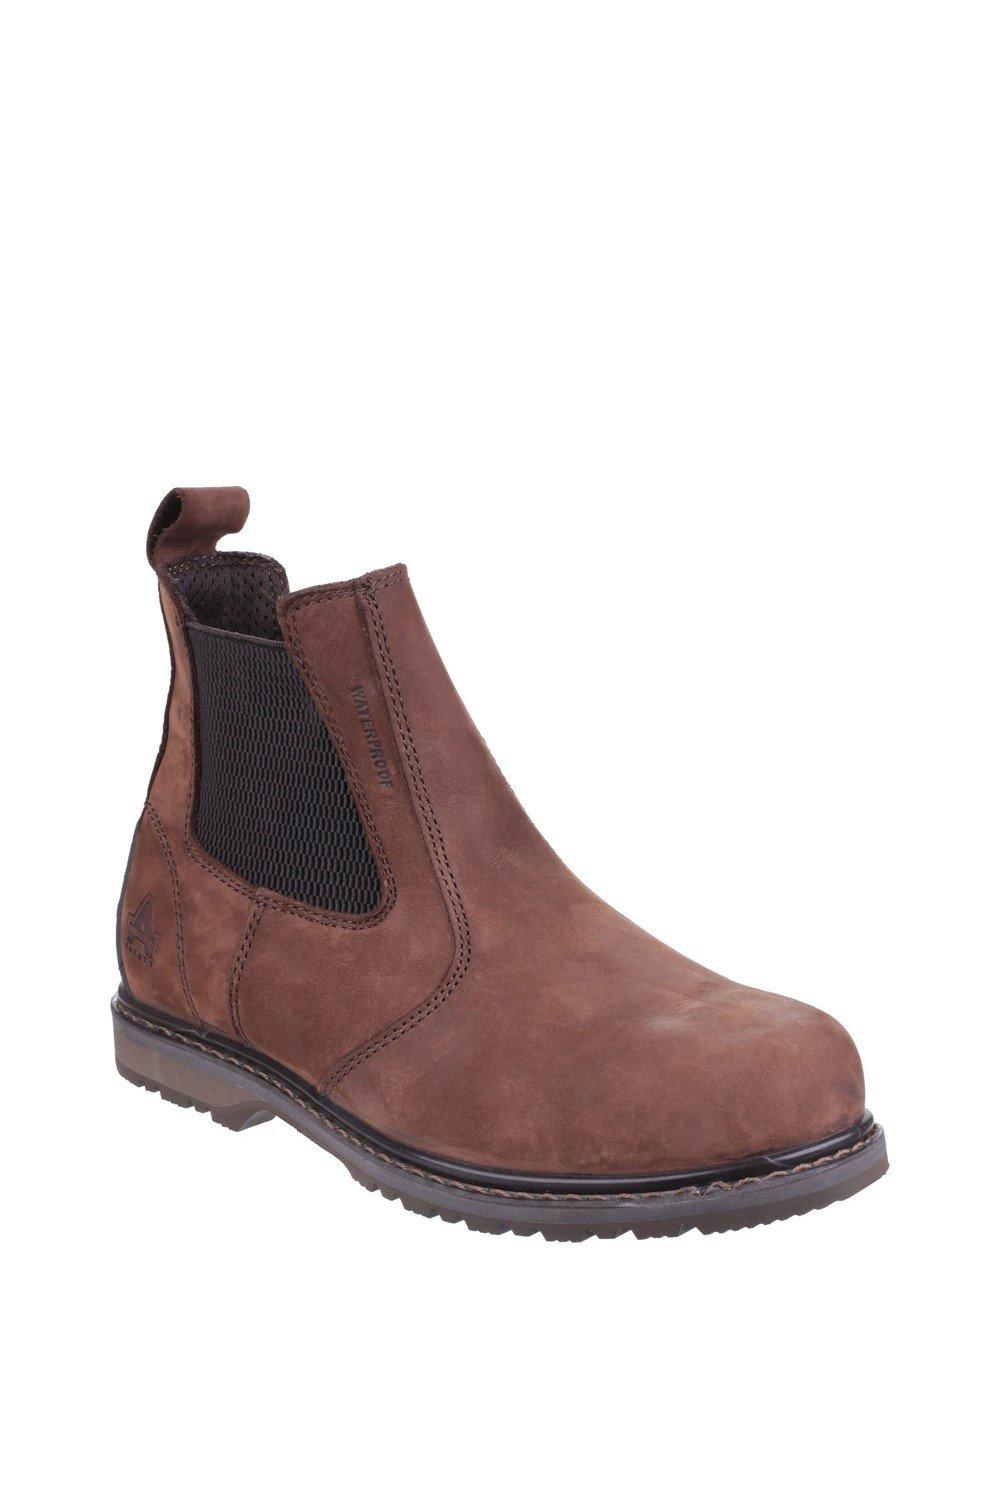 Защитные ботинки 'AS148 SPERRIN' Amblers Safety, коричневый ботинки мужские рабочие со стальным носком легкие защитные нескользящие дышащие кроссовки для строительства стальной носок